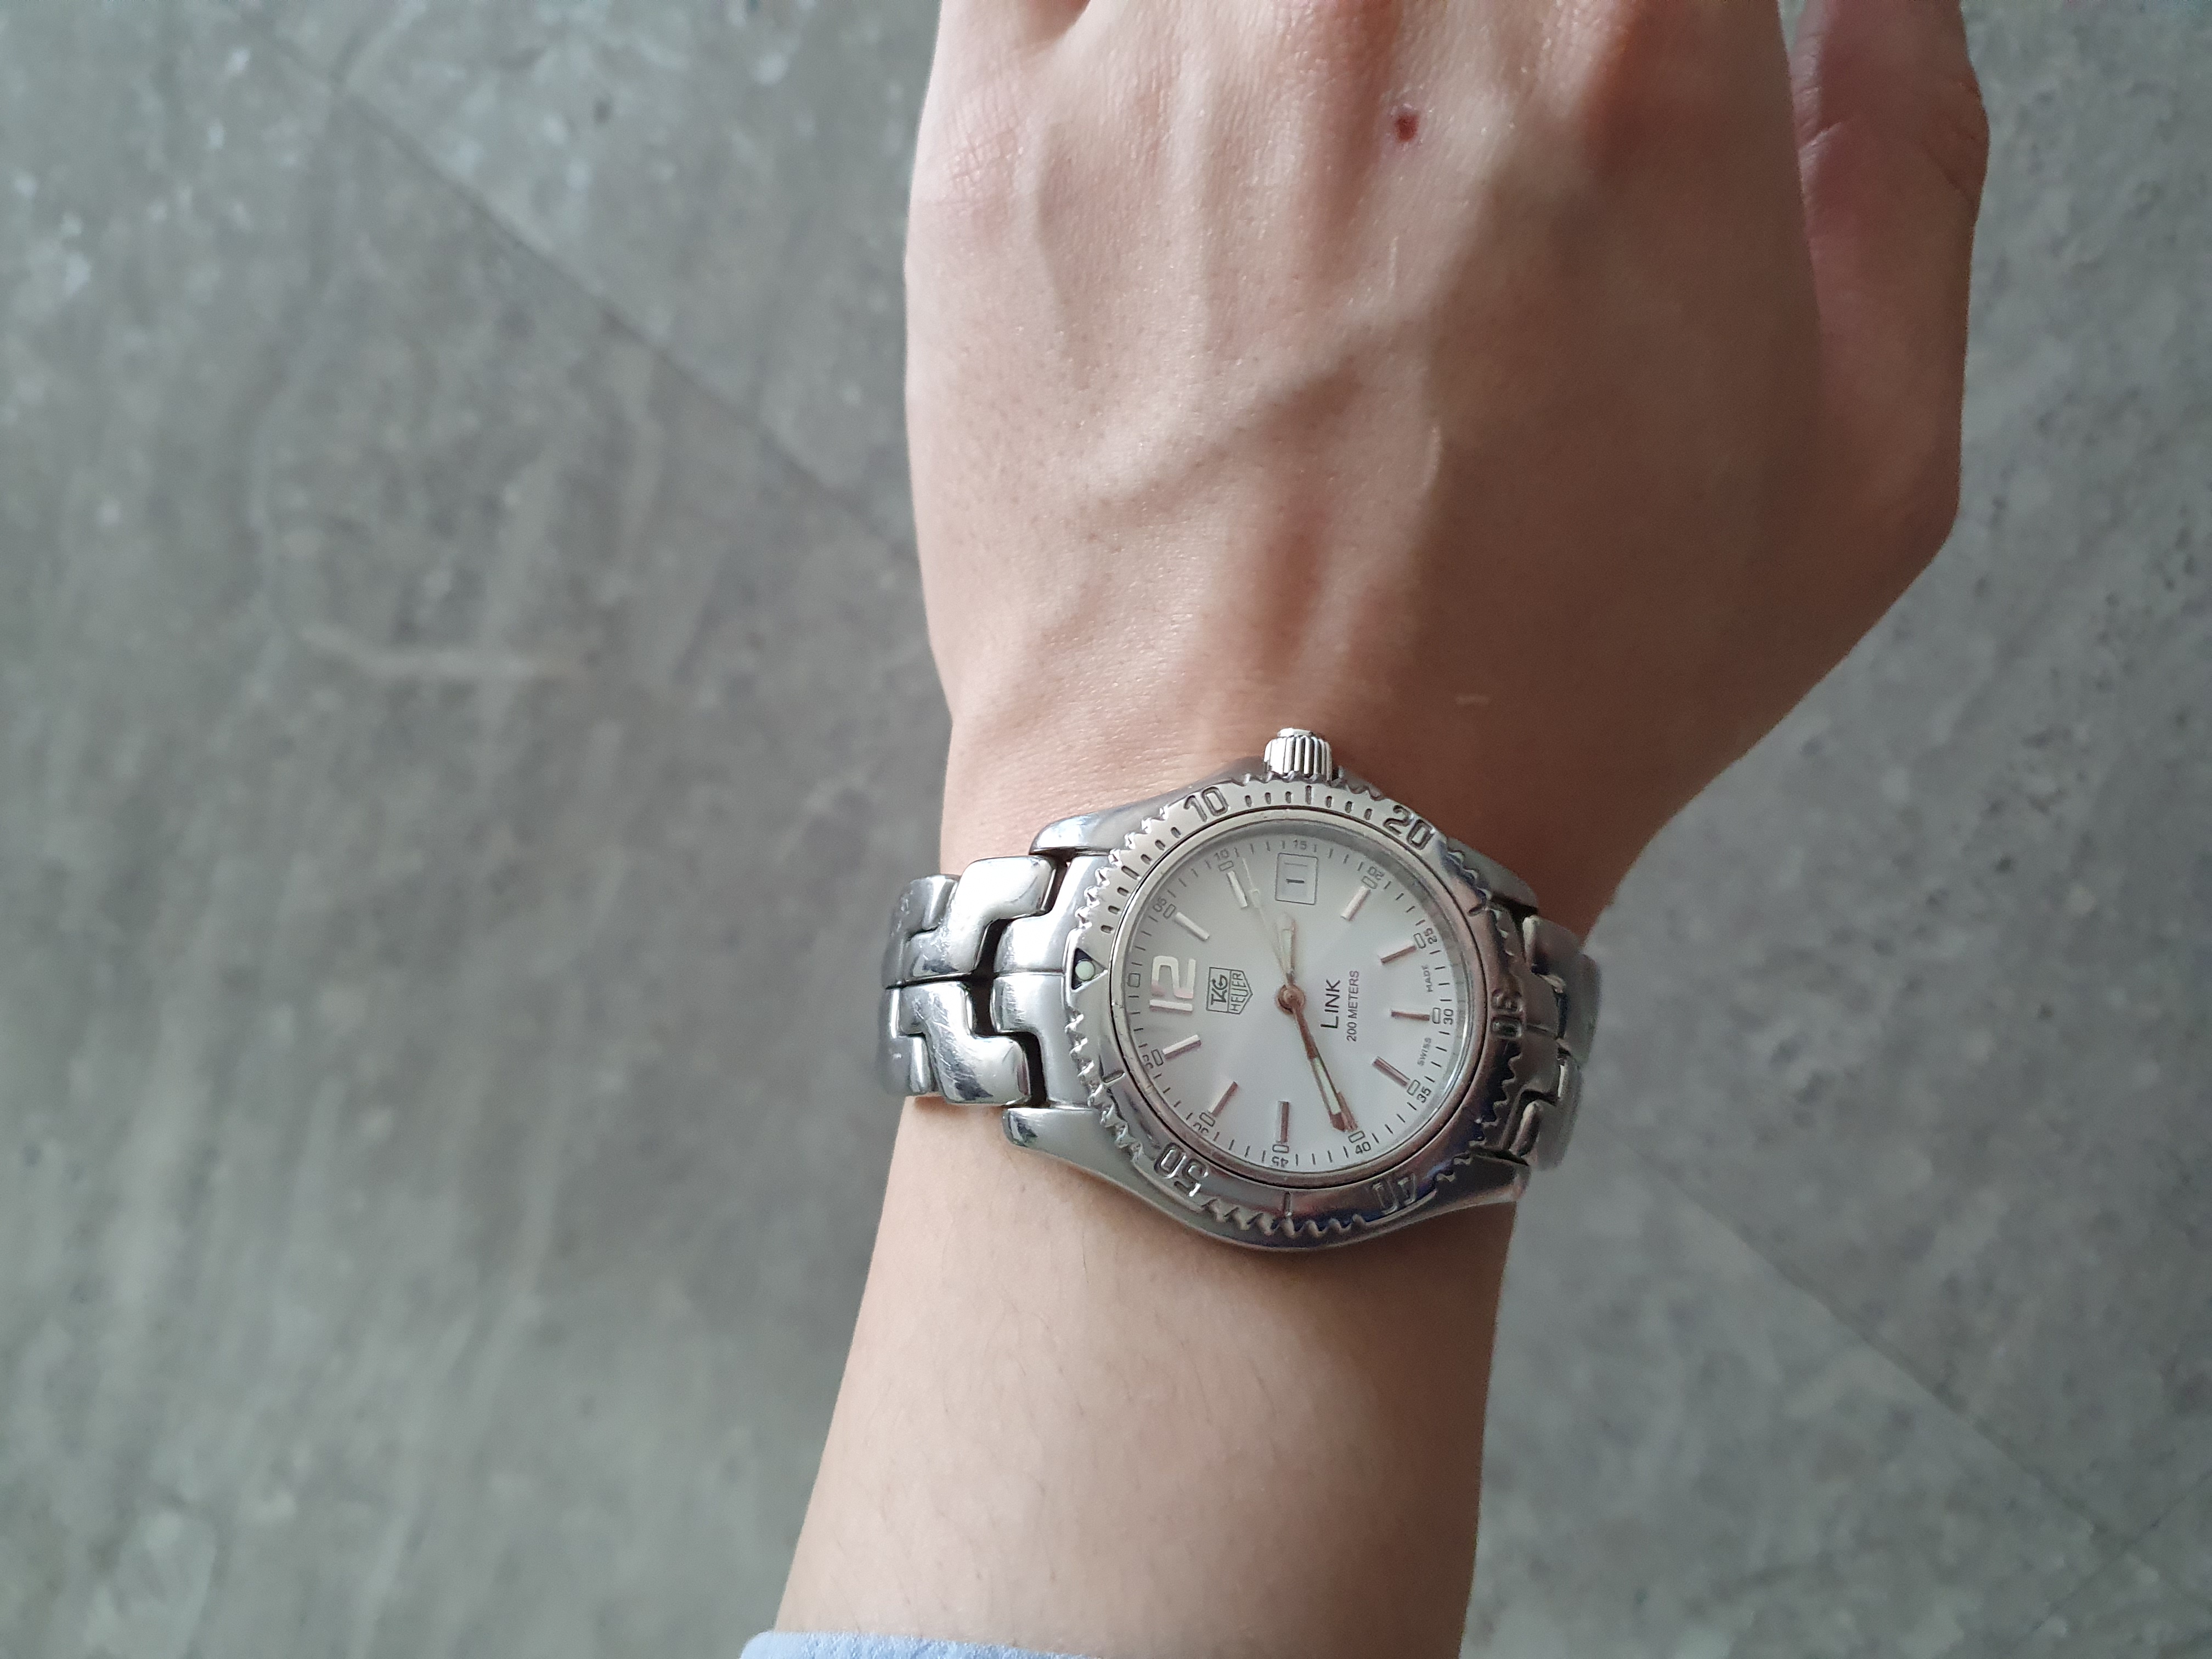 태그호이어 링크 흰색다이얼(WT1214) 쿼츠 시계